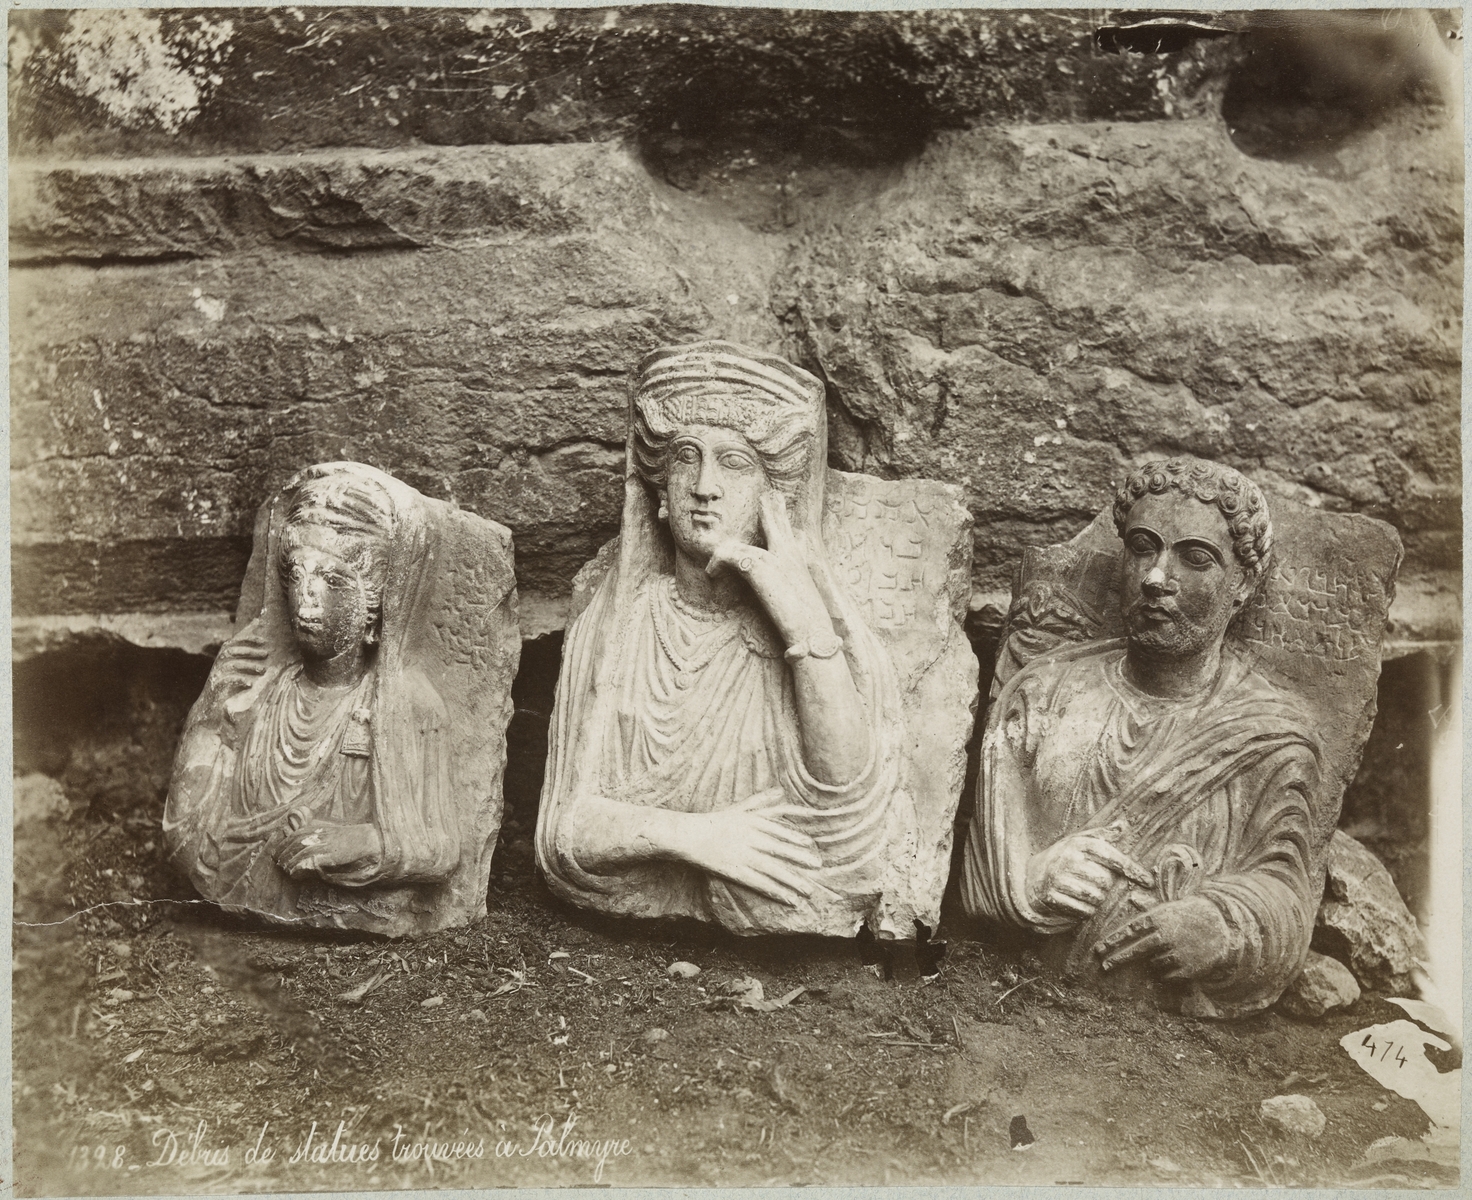 Hauts-reliefs : stèles funéraires